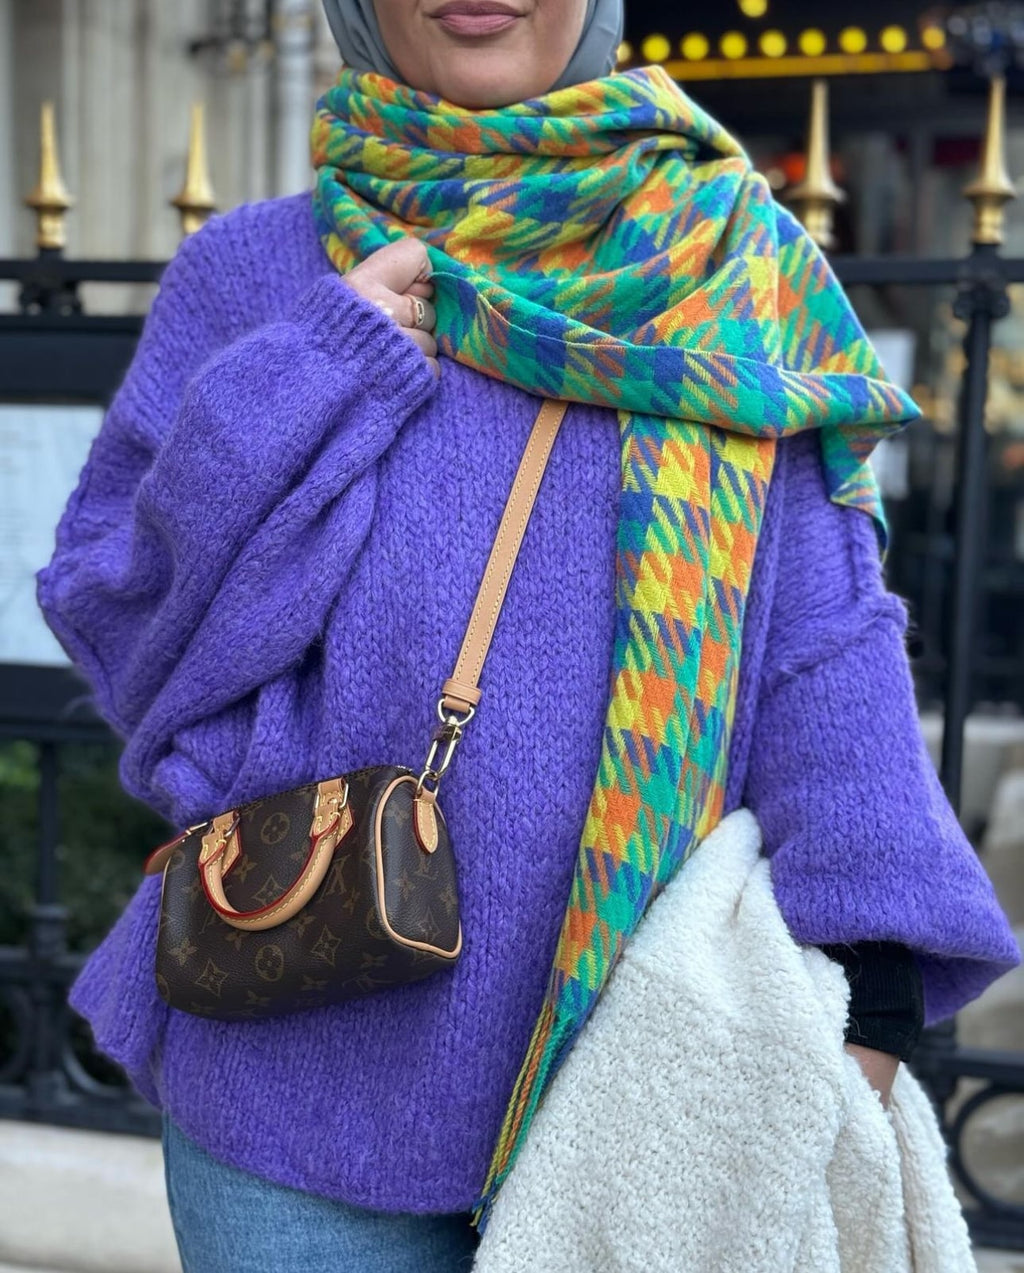 Écharpe XXL en laine multicolore dans les tons jaune, orange et vert, portée avec un pull violet et un sac de marque.